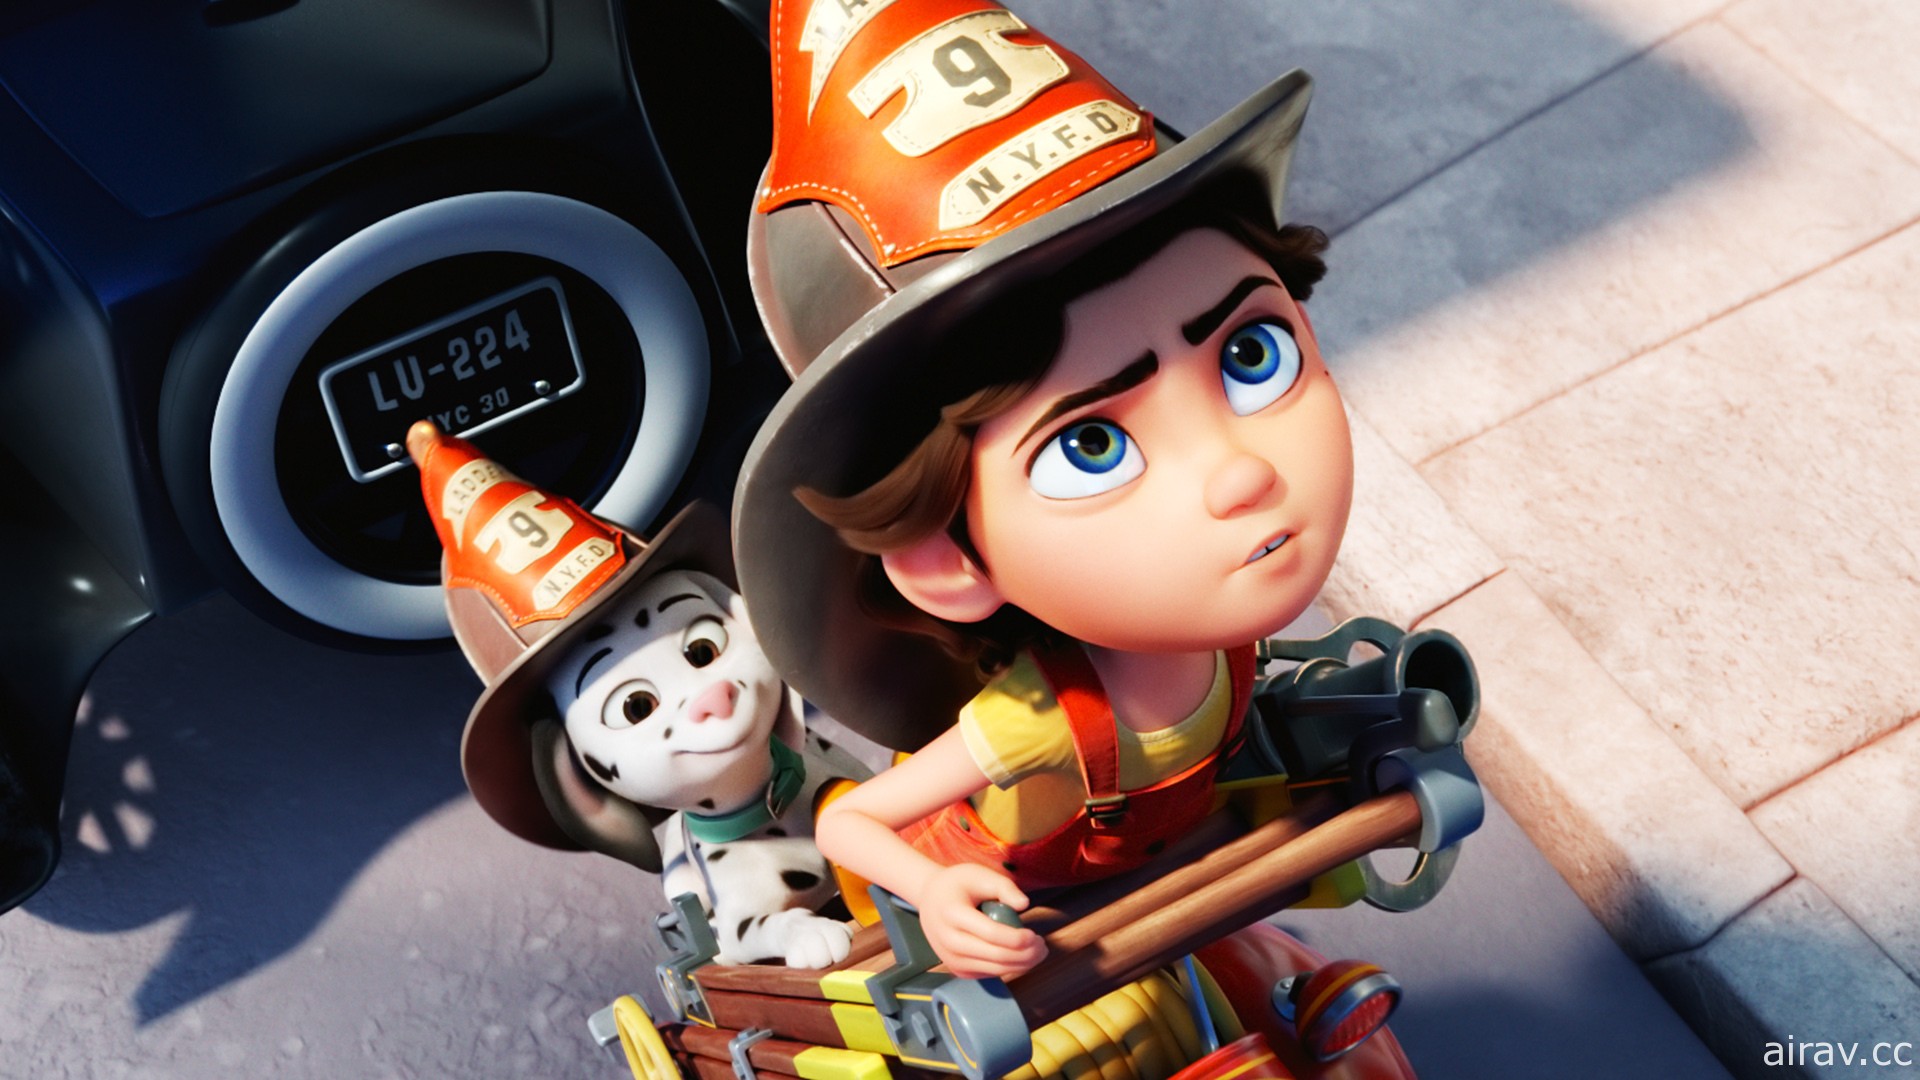 梦想成为消防员《烈火少女》动画电影 7/29 中英版本同步在台上映